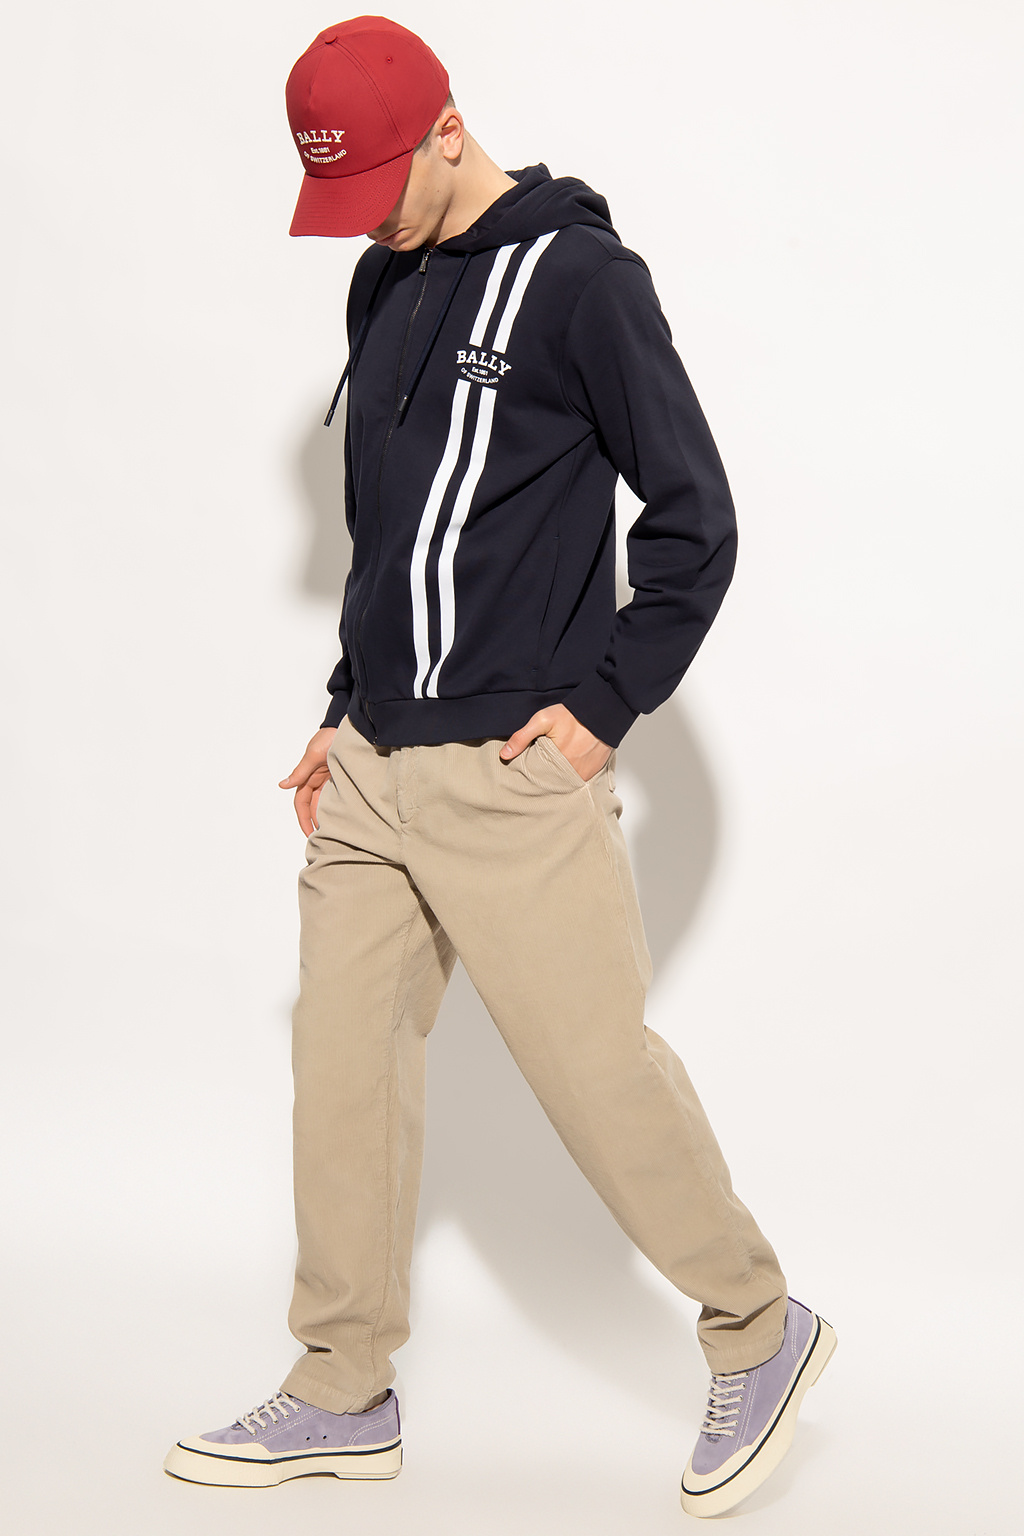 Bally adidas golf adicross 1 2 zip hoodie Full-Zip fq3529 white